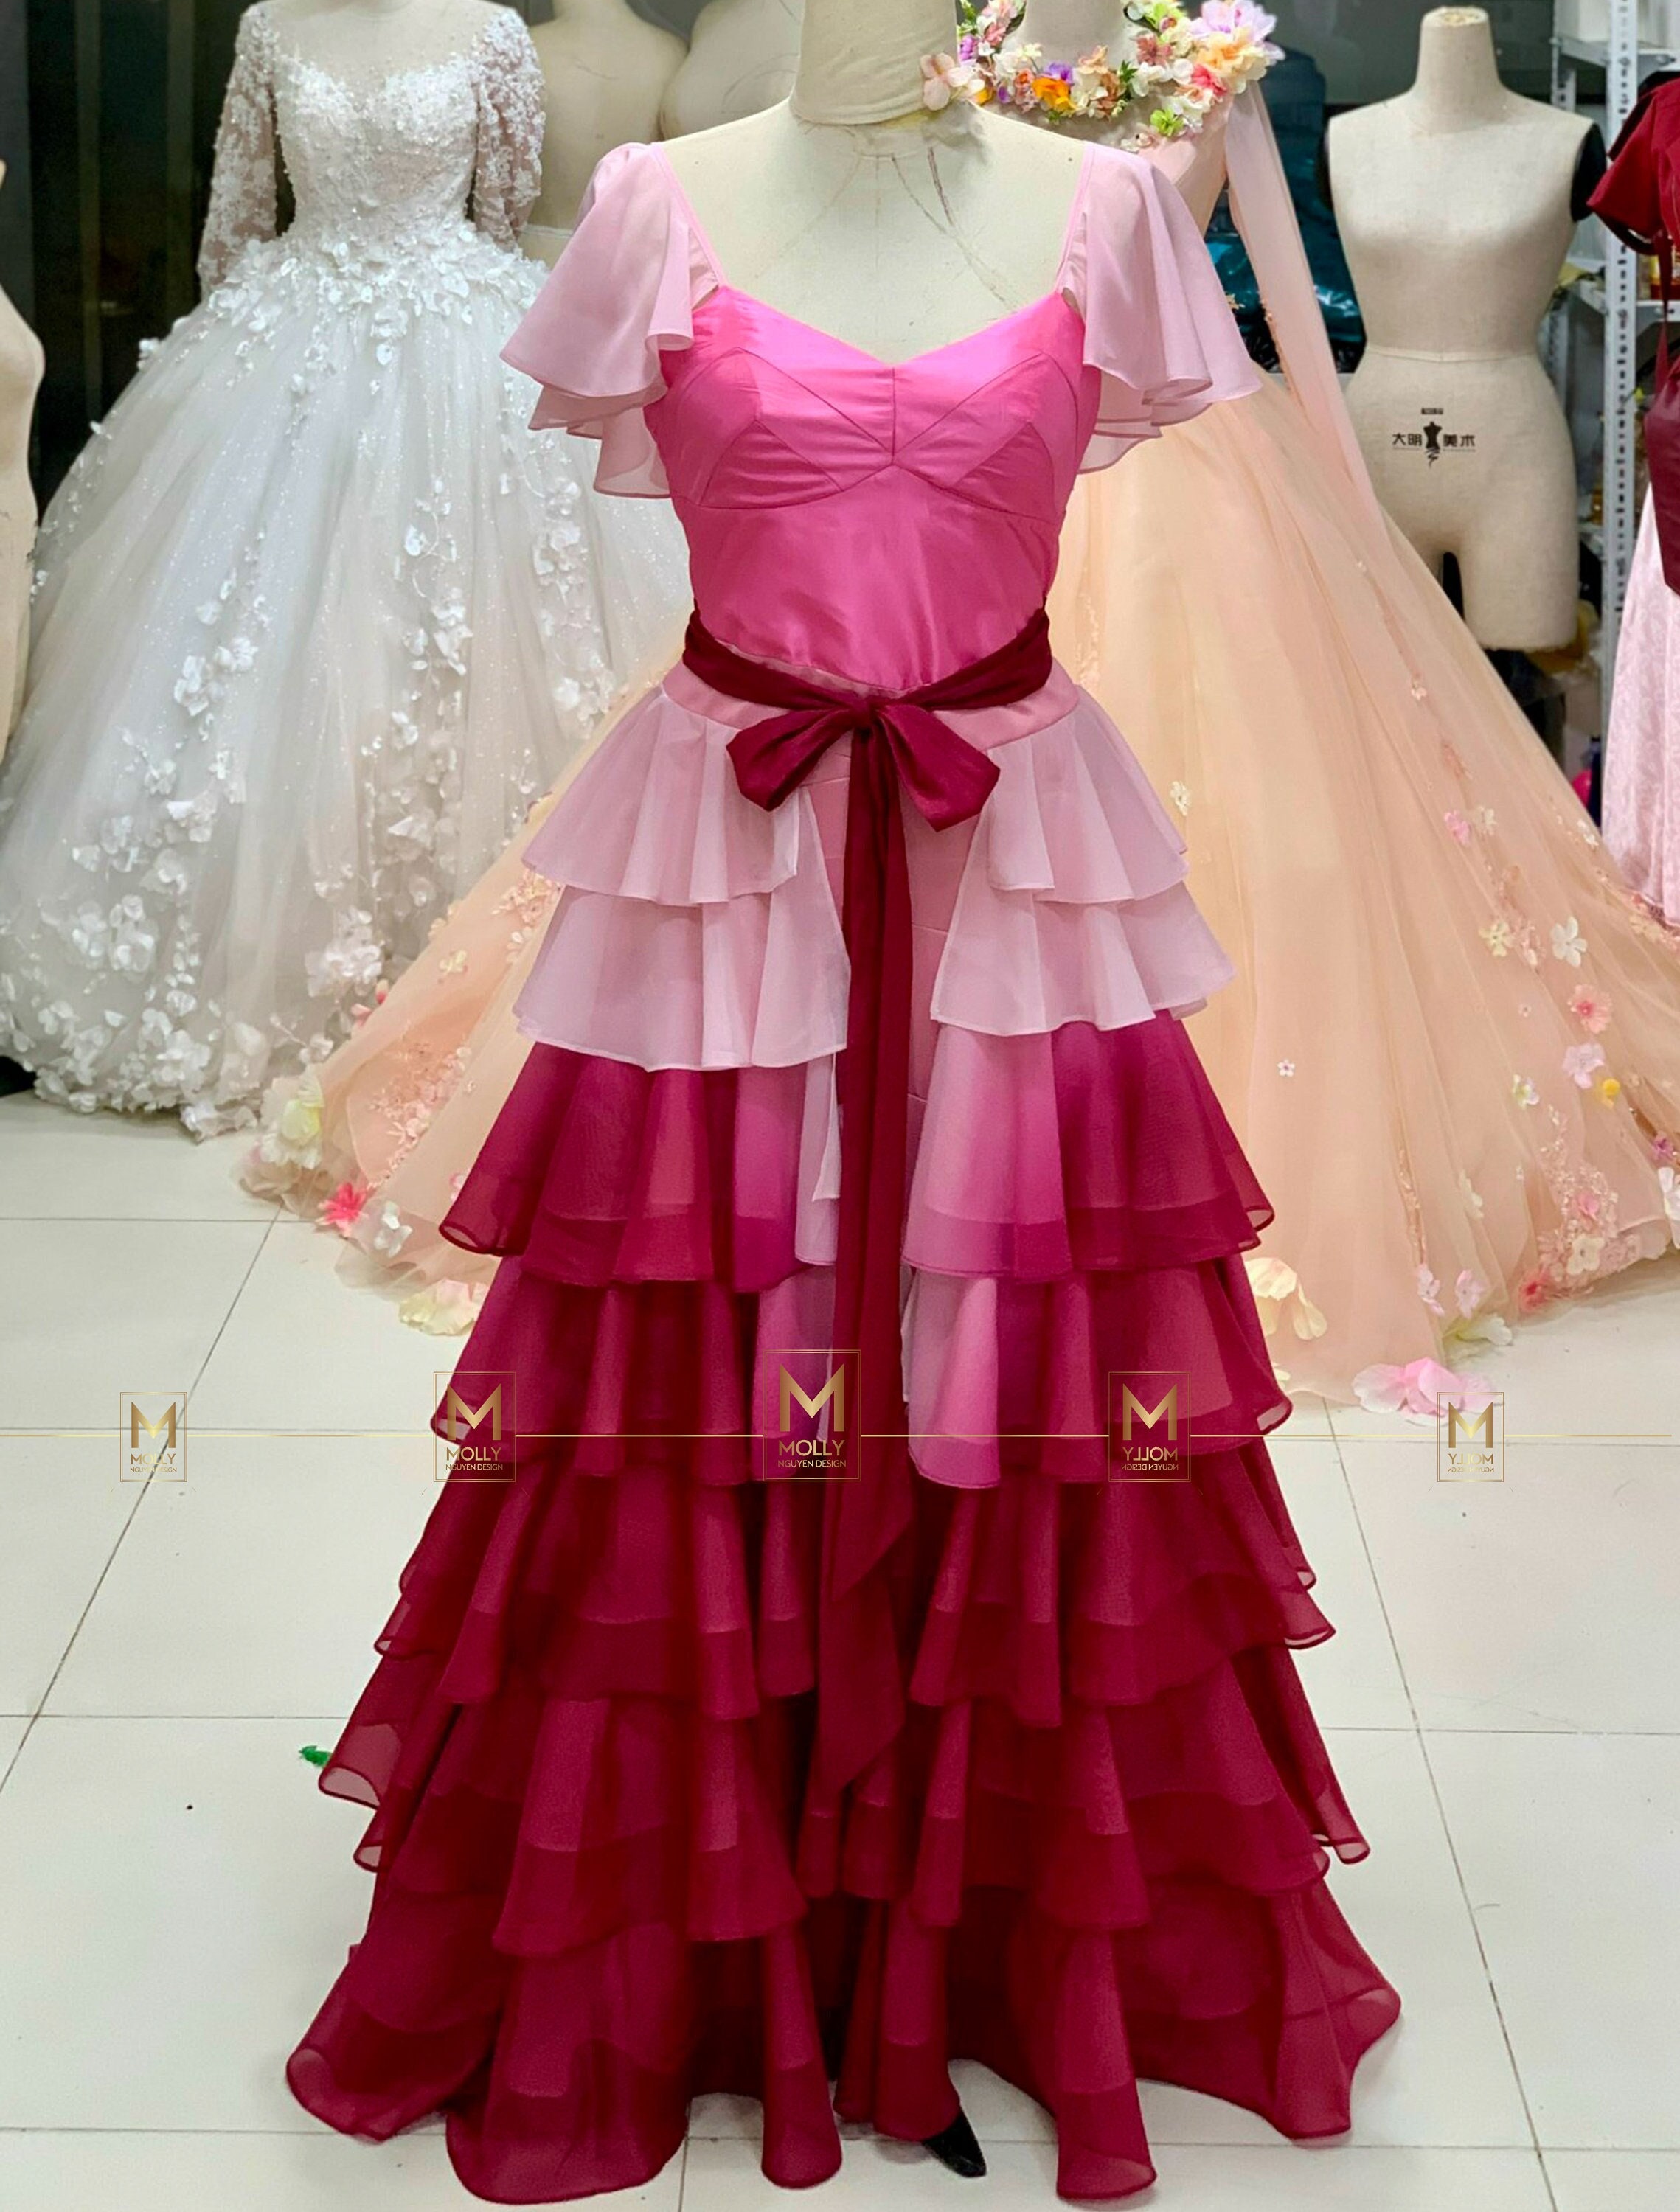 Hermiones pink dress